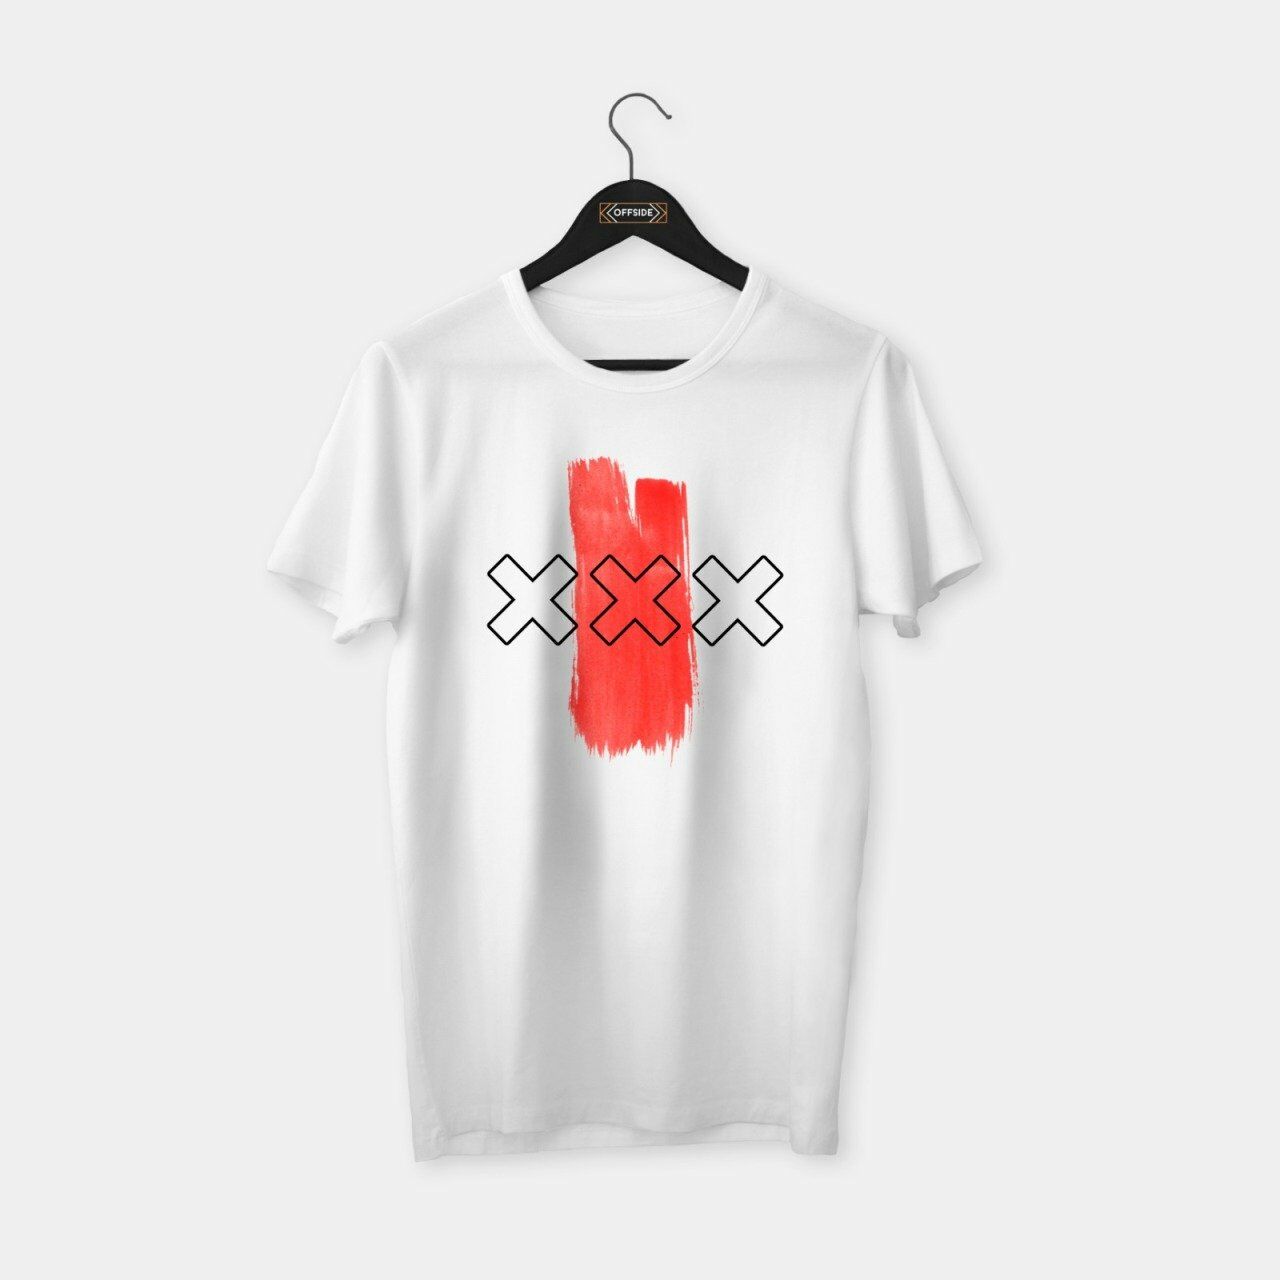 Ajax 'XXX' T-shirt